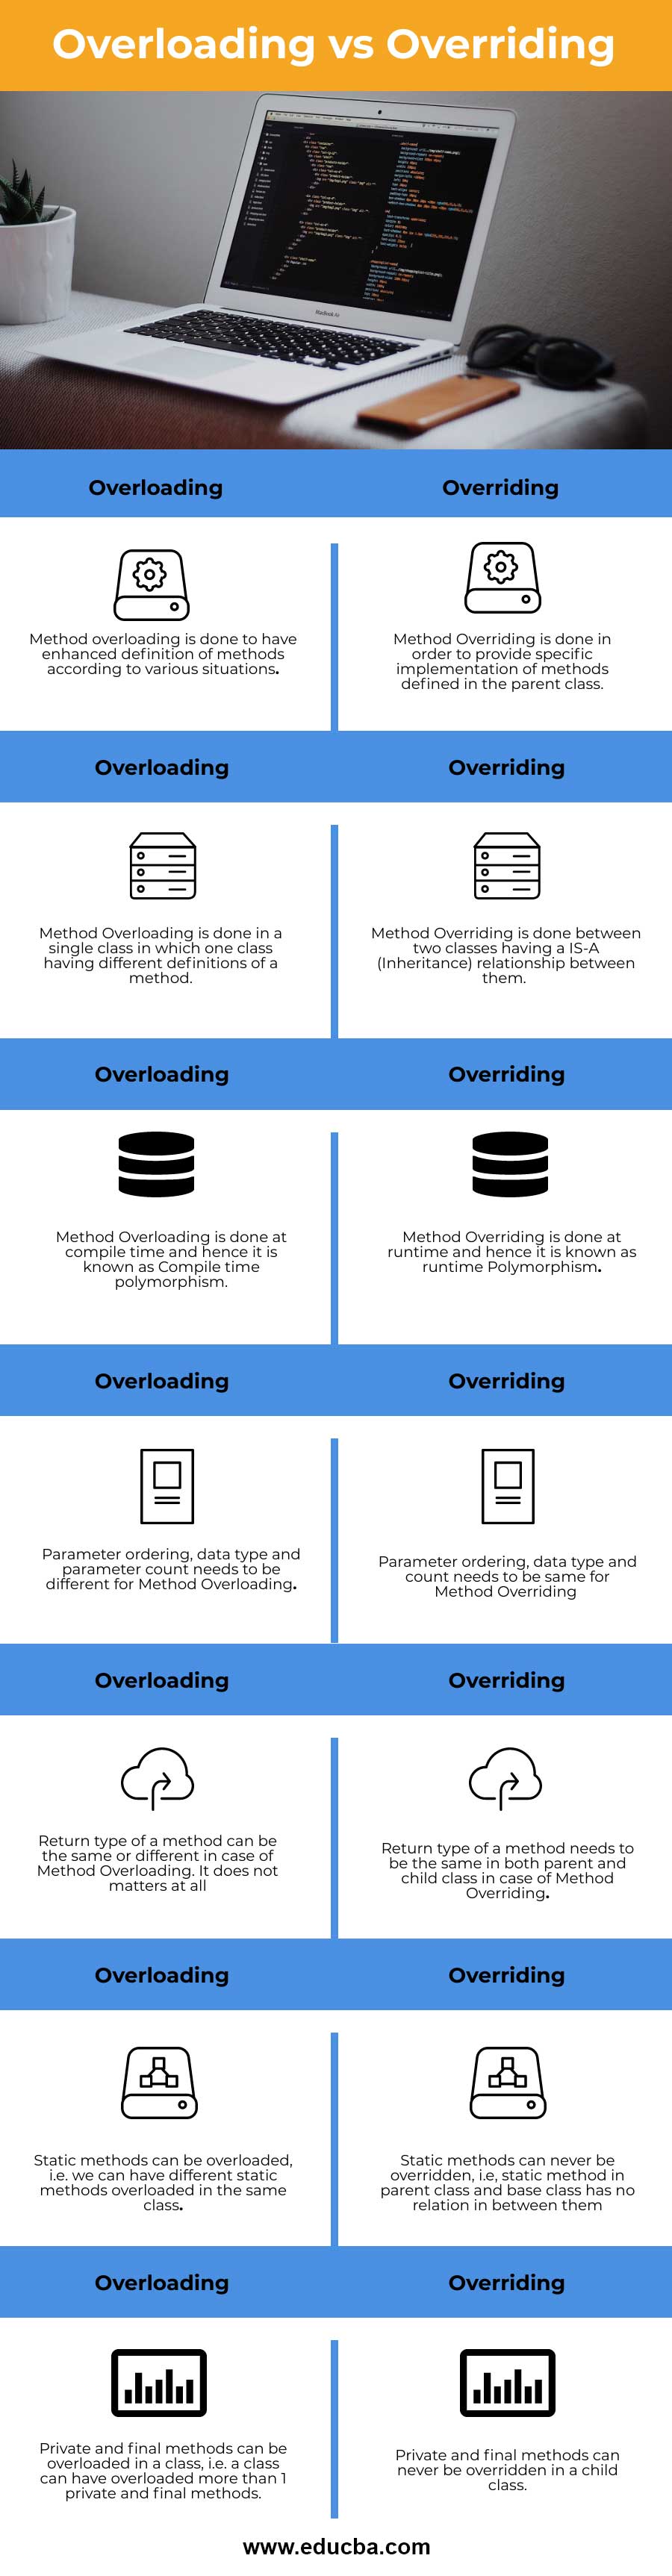 Overloading-vs-Overriding-info